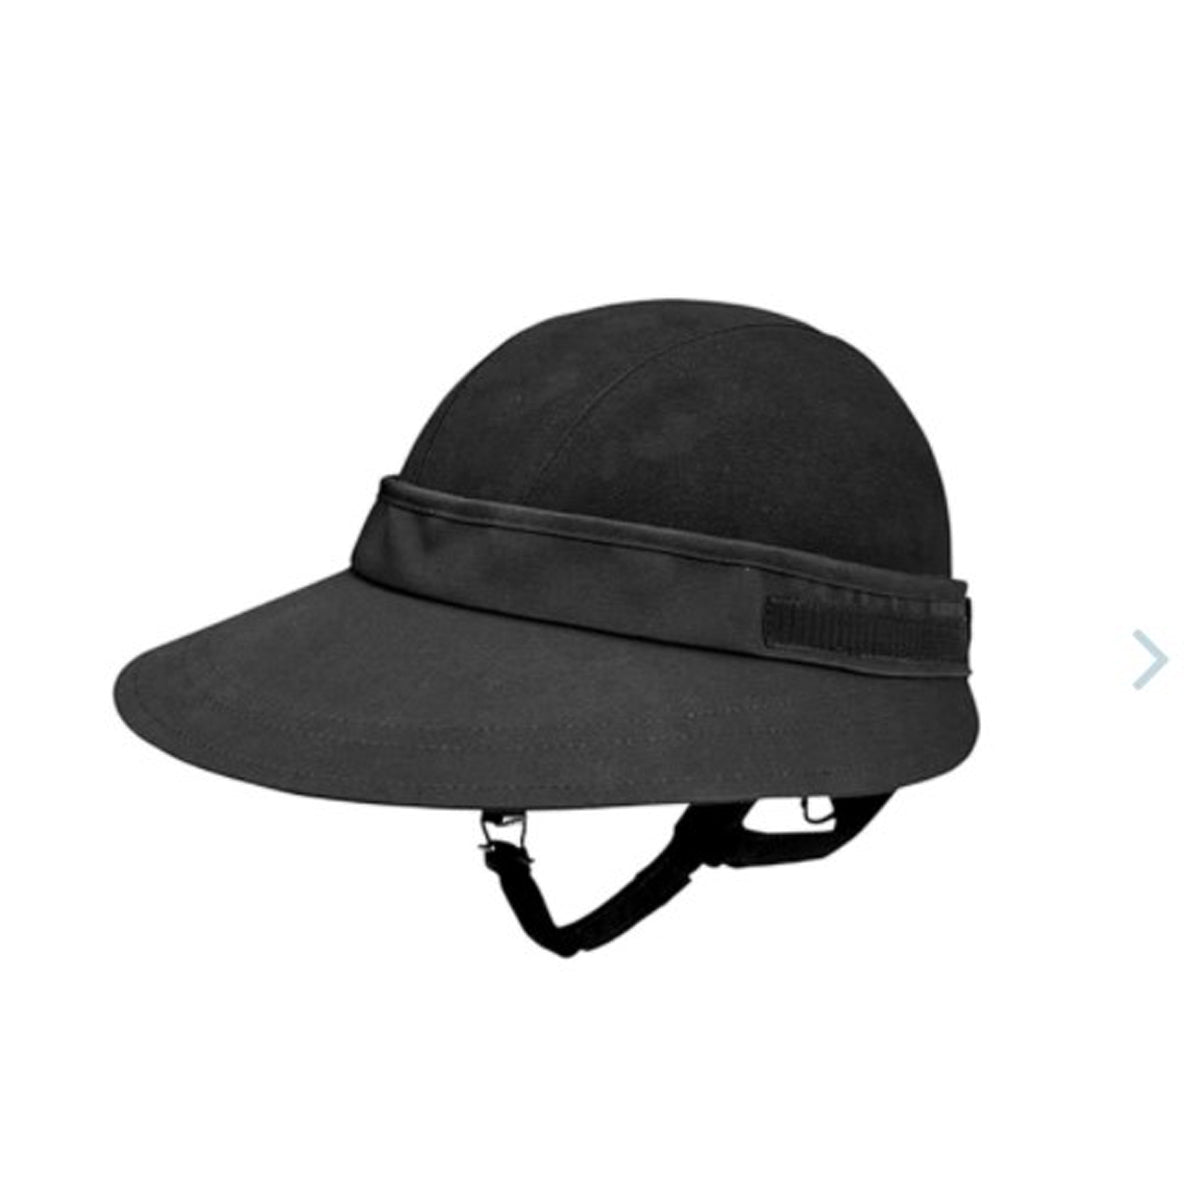 EquiVisor ® Helmet Visor Sun Protector